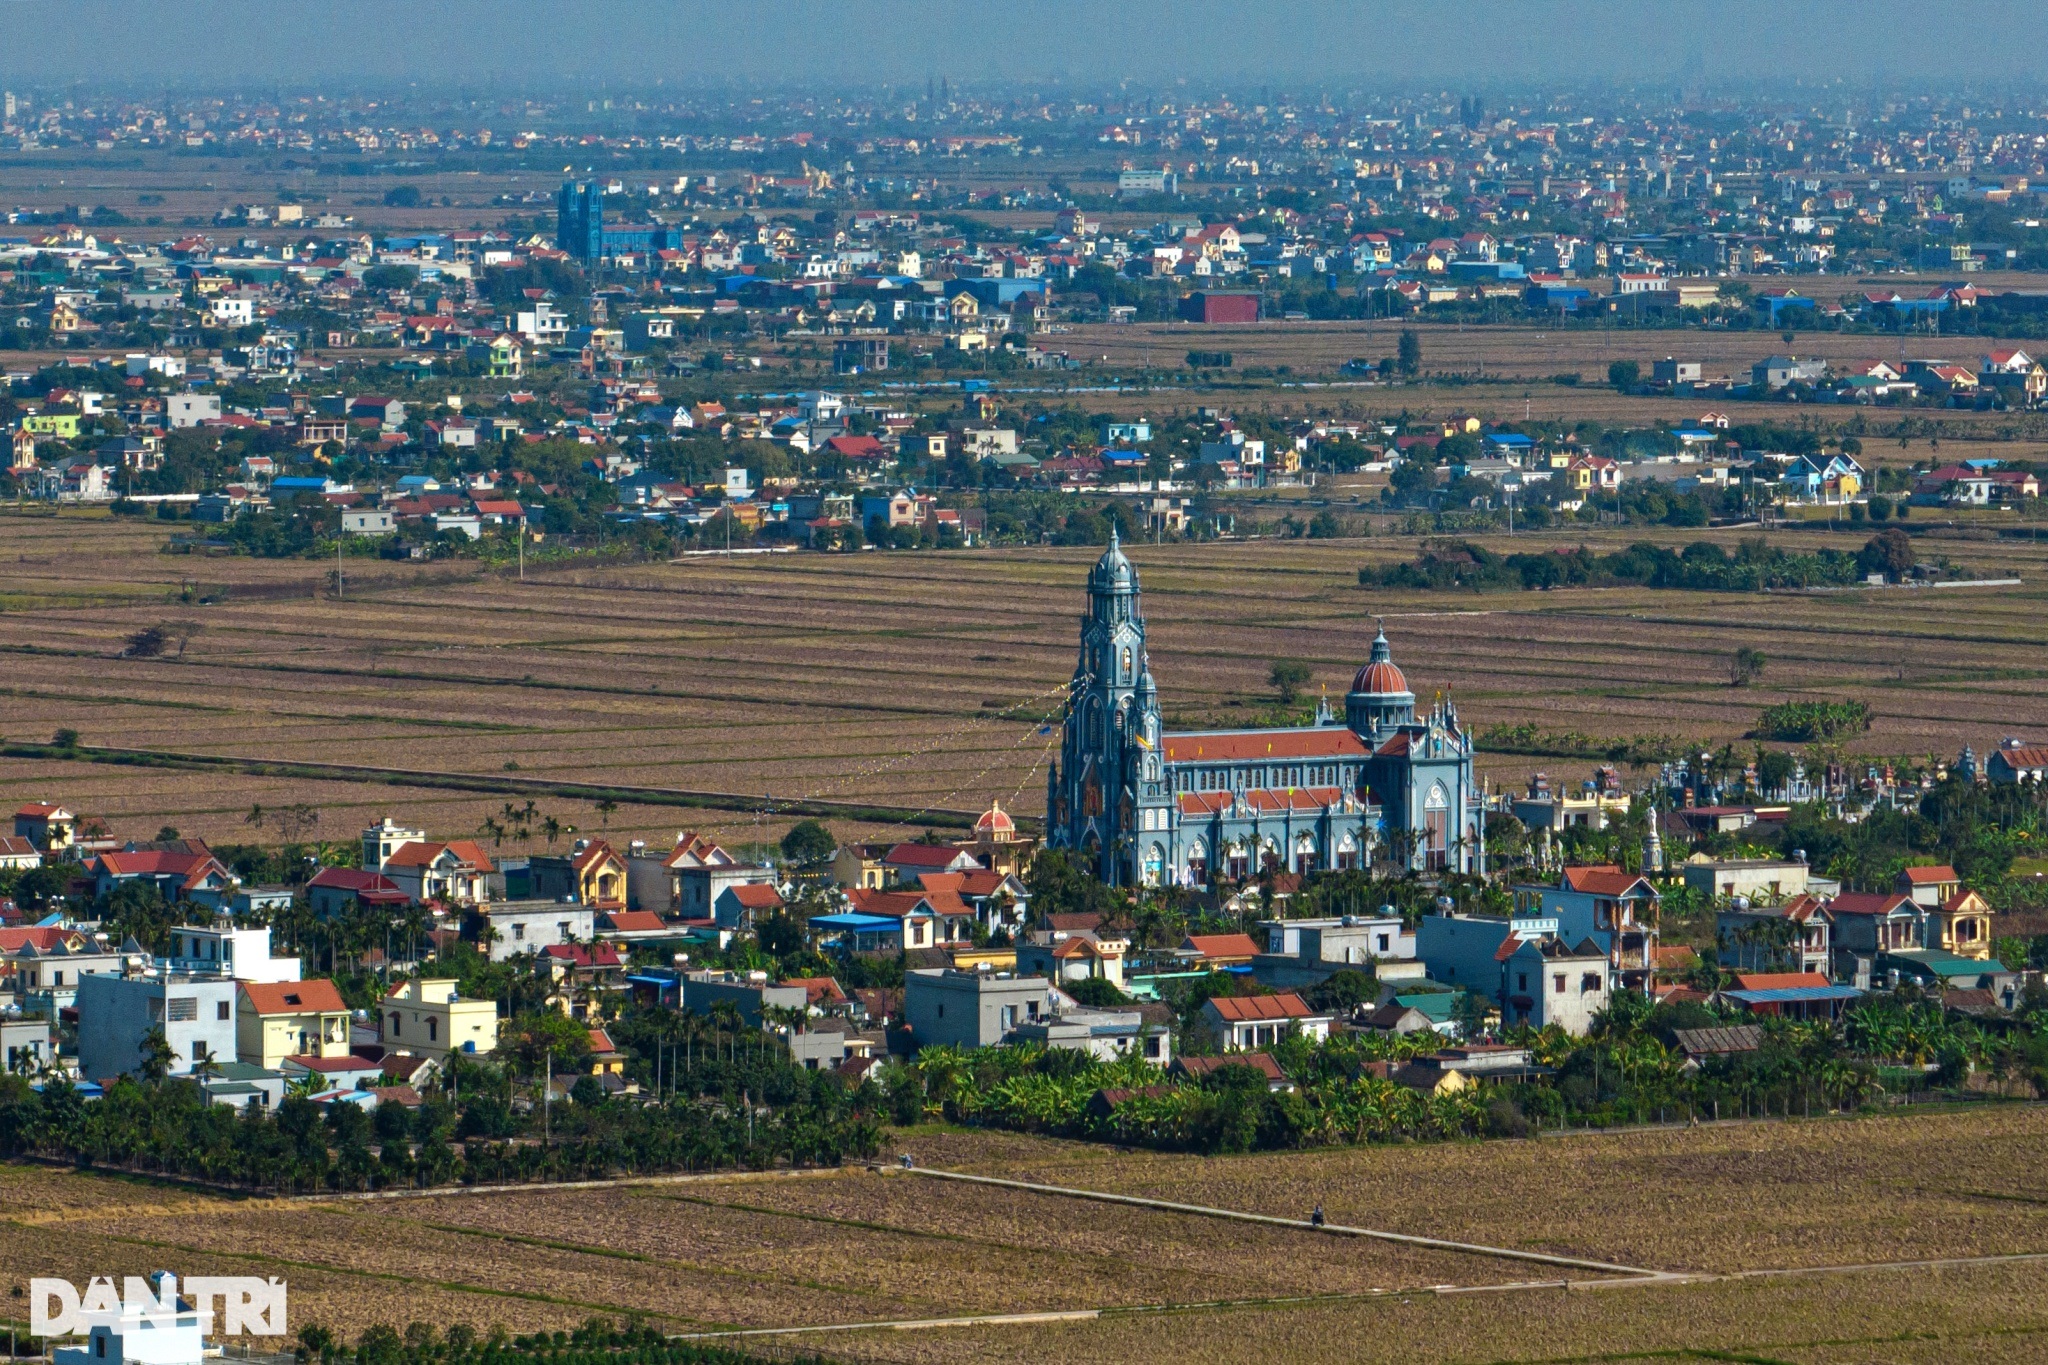 Xứ sở nhiều nhà thờ nhất Việt Nam trang hoàng lộng lẫy đón Giáng sinh - 3